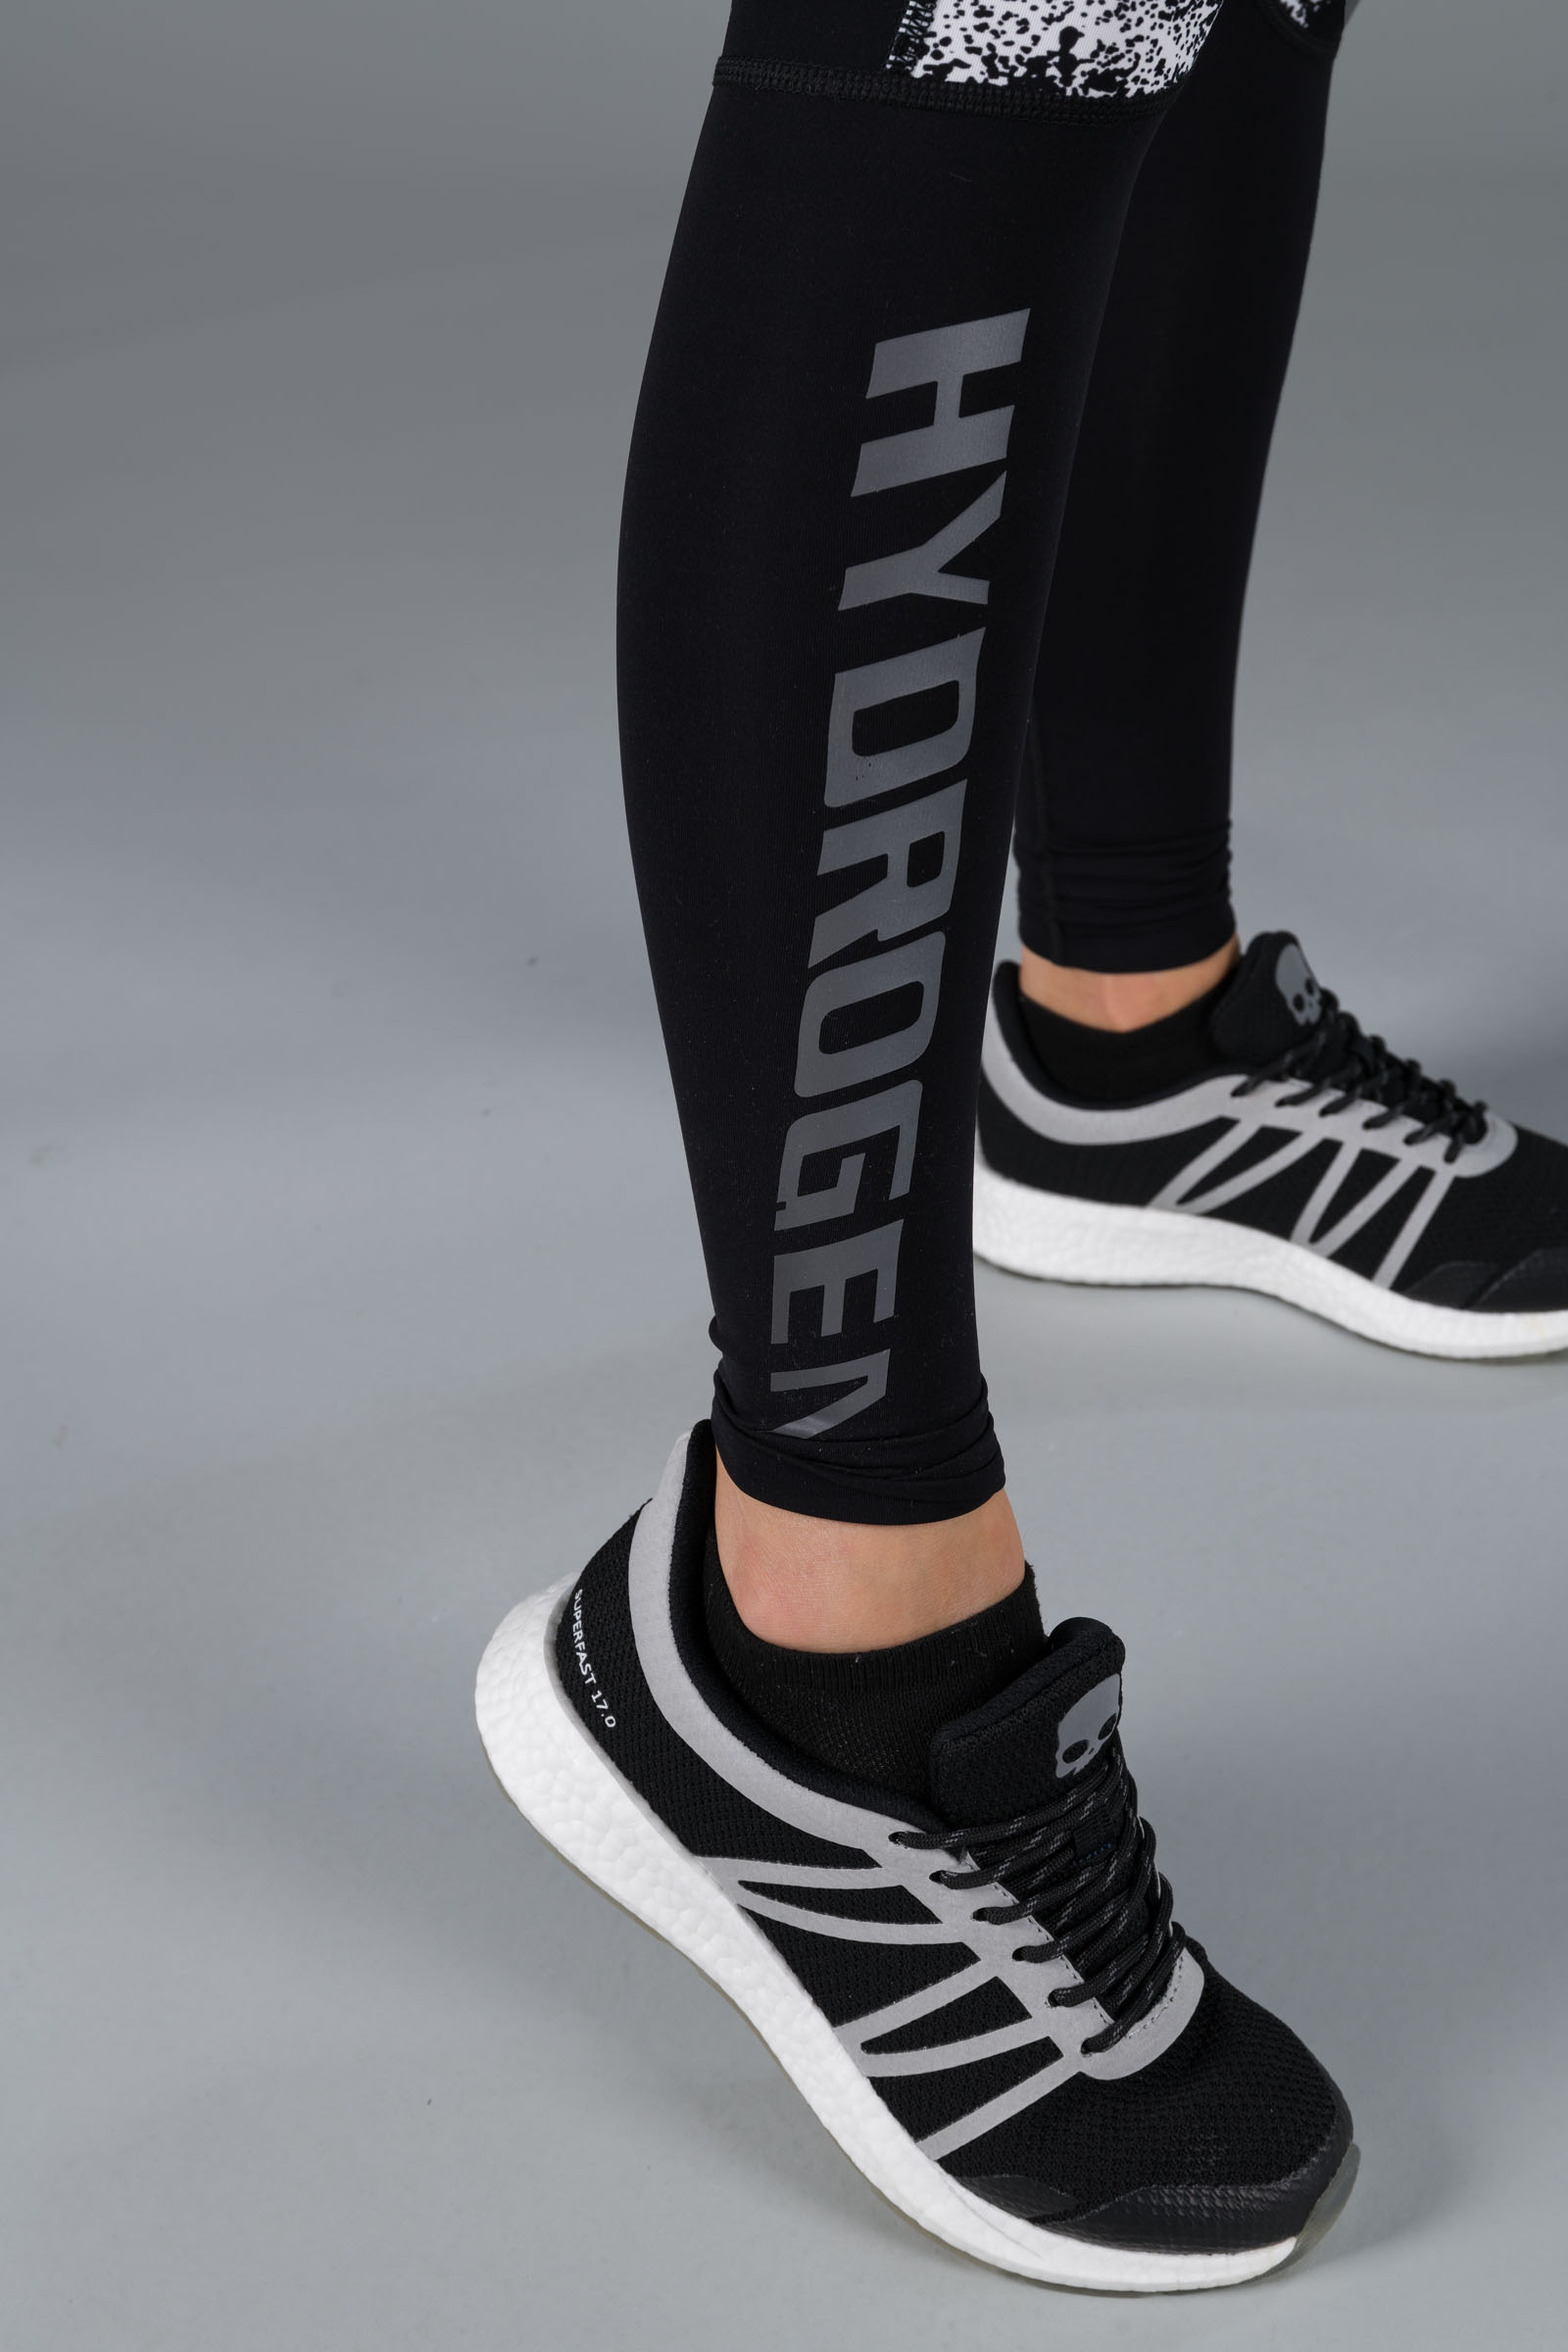 SPRAY LEGGINGS - BLACK,WHITE - Abbigliamento sportivo | Hydrogen